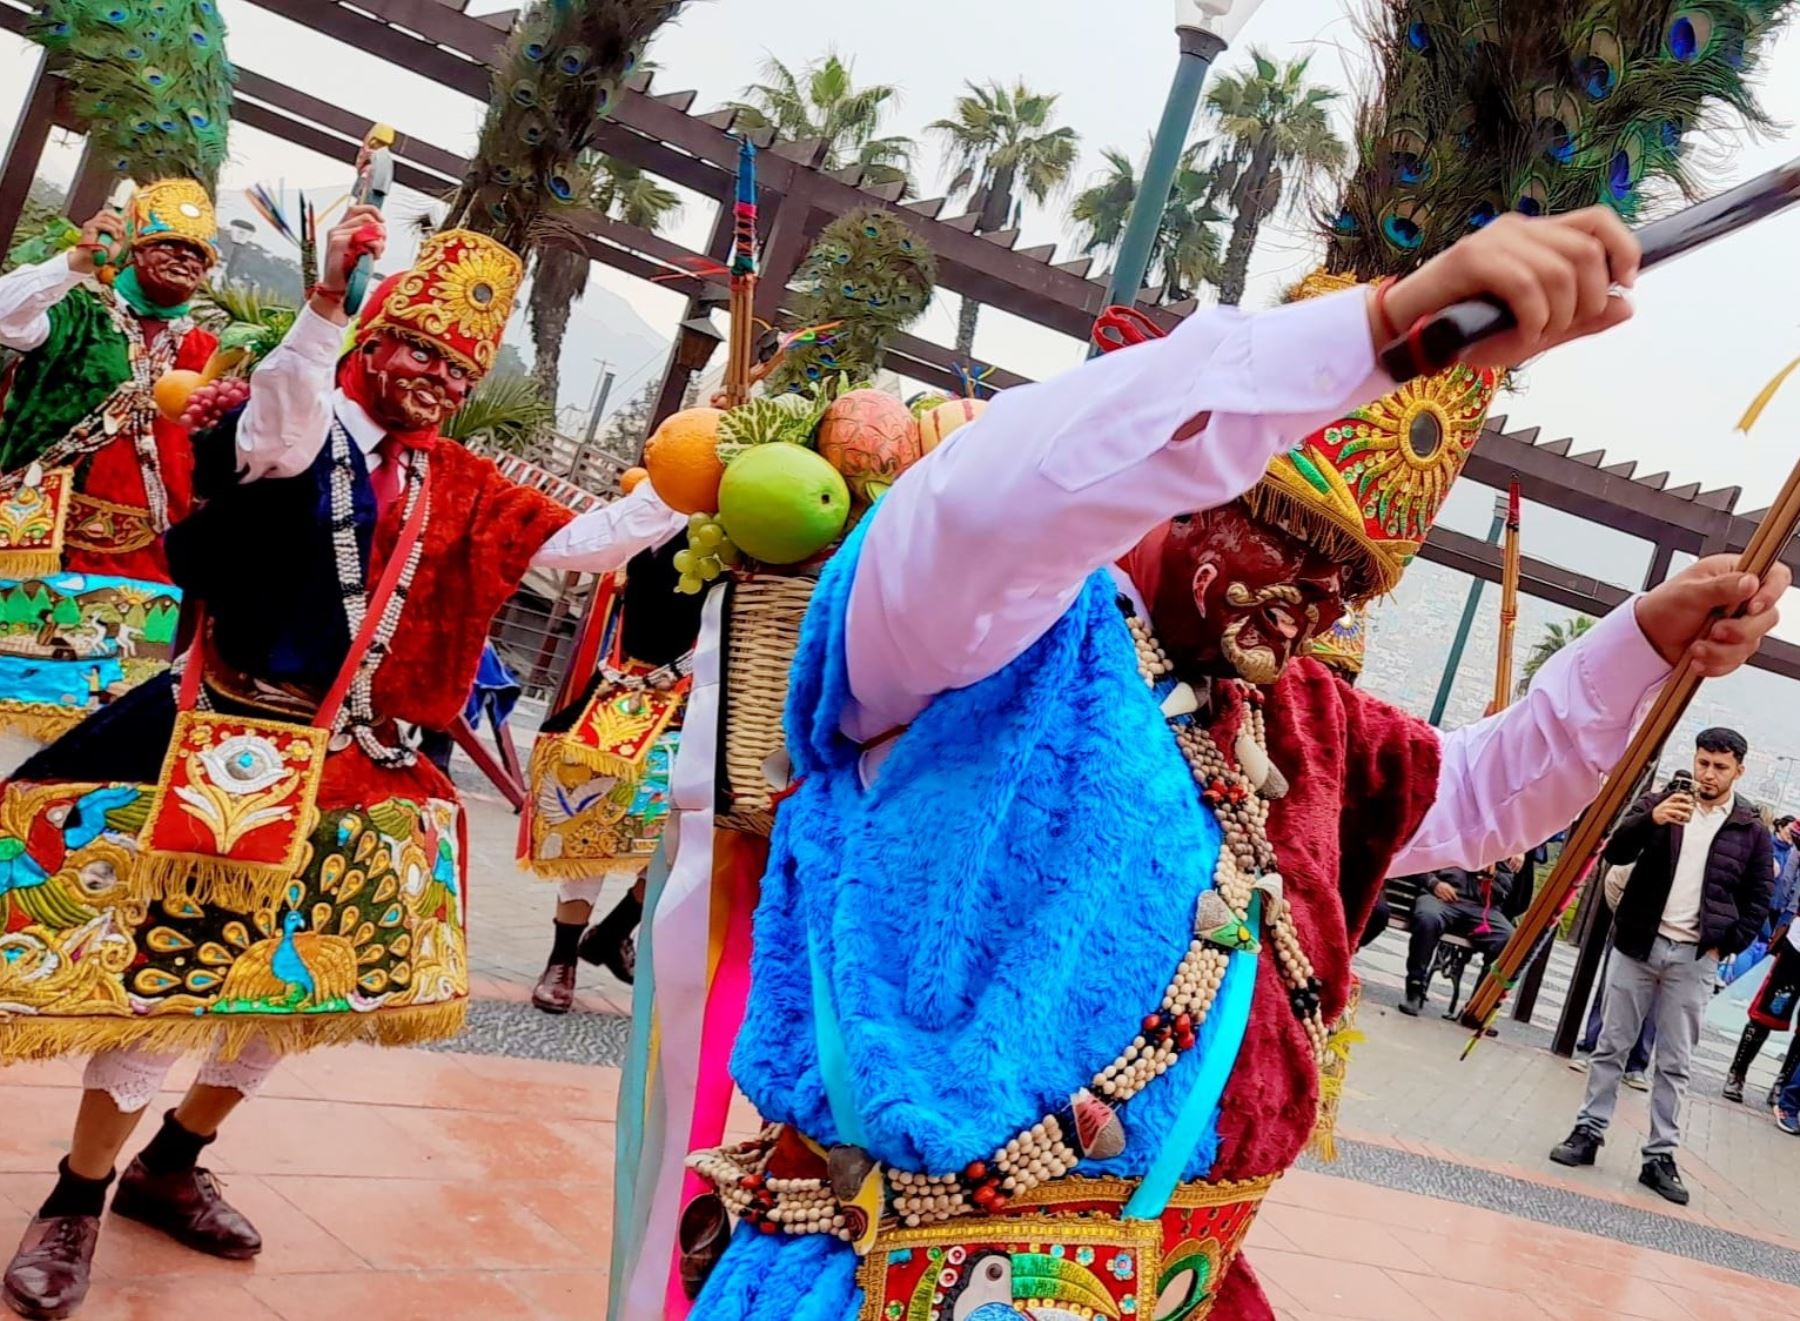 La celebración de la Fiesta de Santiago o Tayta Shanty, patrón de los pueblos del Valle del Mantaro, coincide con las Fiestas Patrias y por ello Junín espera que más de 150,000 personas visiten esa región. ANDINA/Difusión